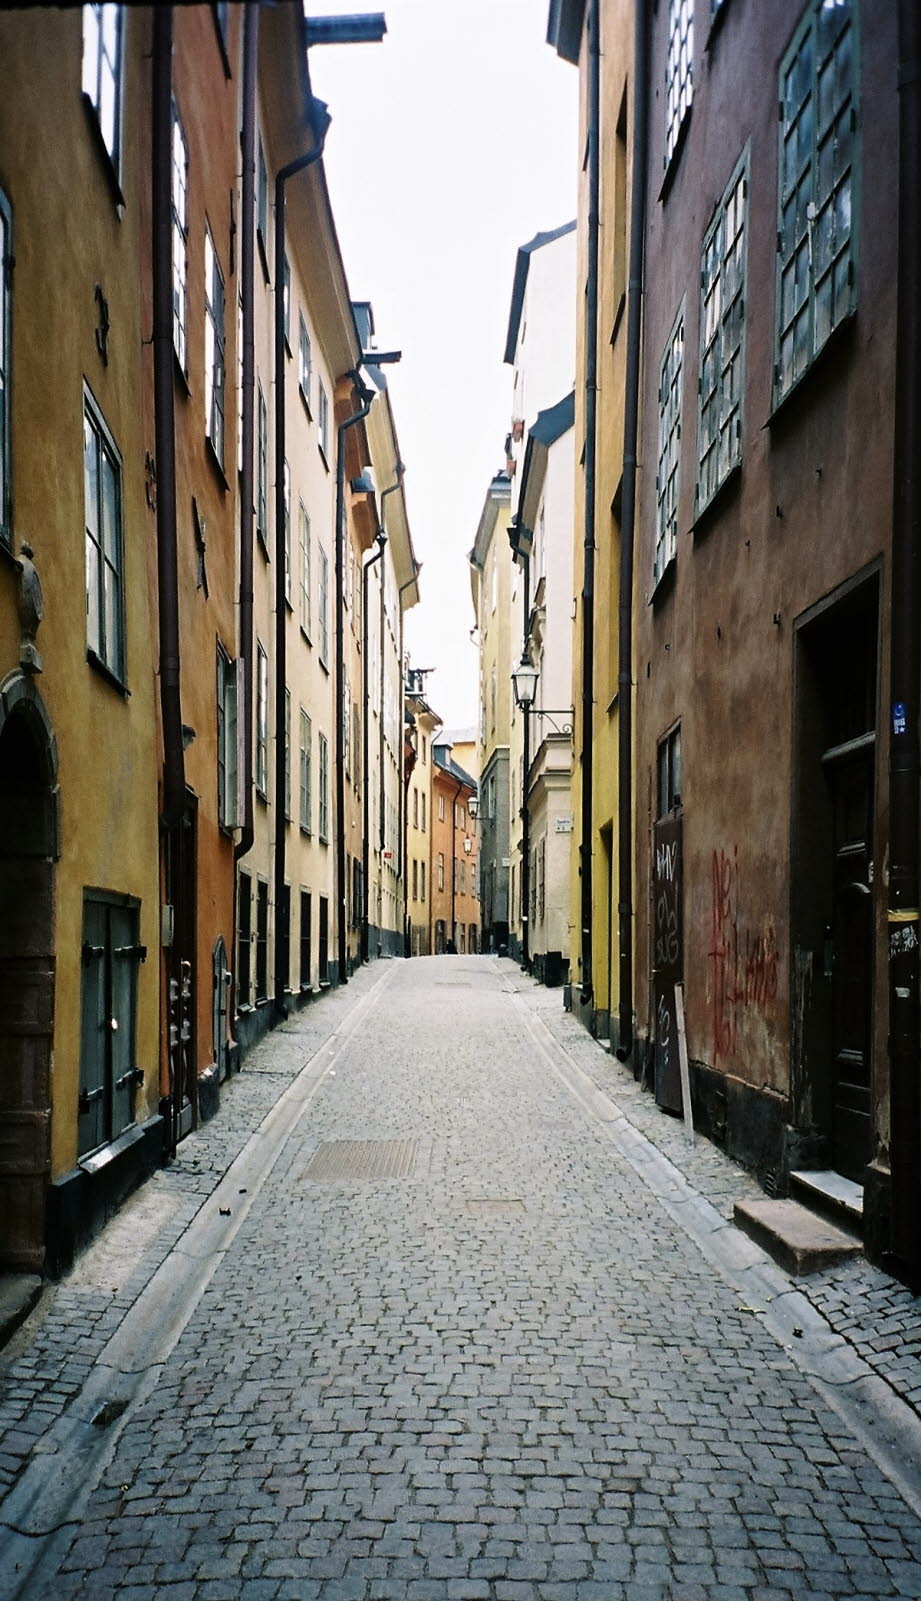 Gamla Stan, die Altstadt, ist einer der größten und am besten erhaltenen mittelalterlichen Stadtkerne Europas und eine der wichtigsten Sehenswürdigkeiten Stockholms. Hier wurde Stockholm 1252 gegründet. Ganz Gamla Stan und die angrenzende Insel Riddarholm
L